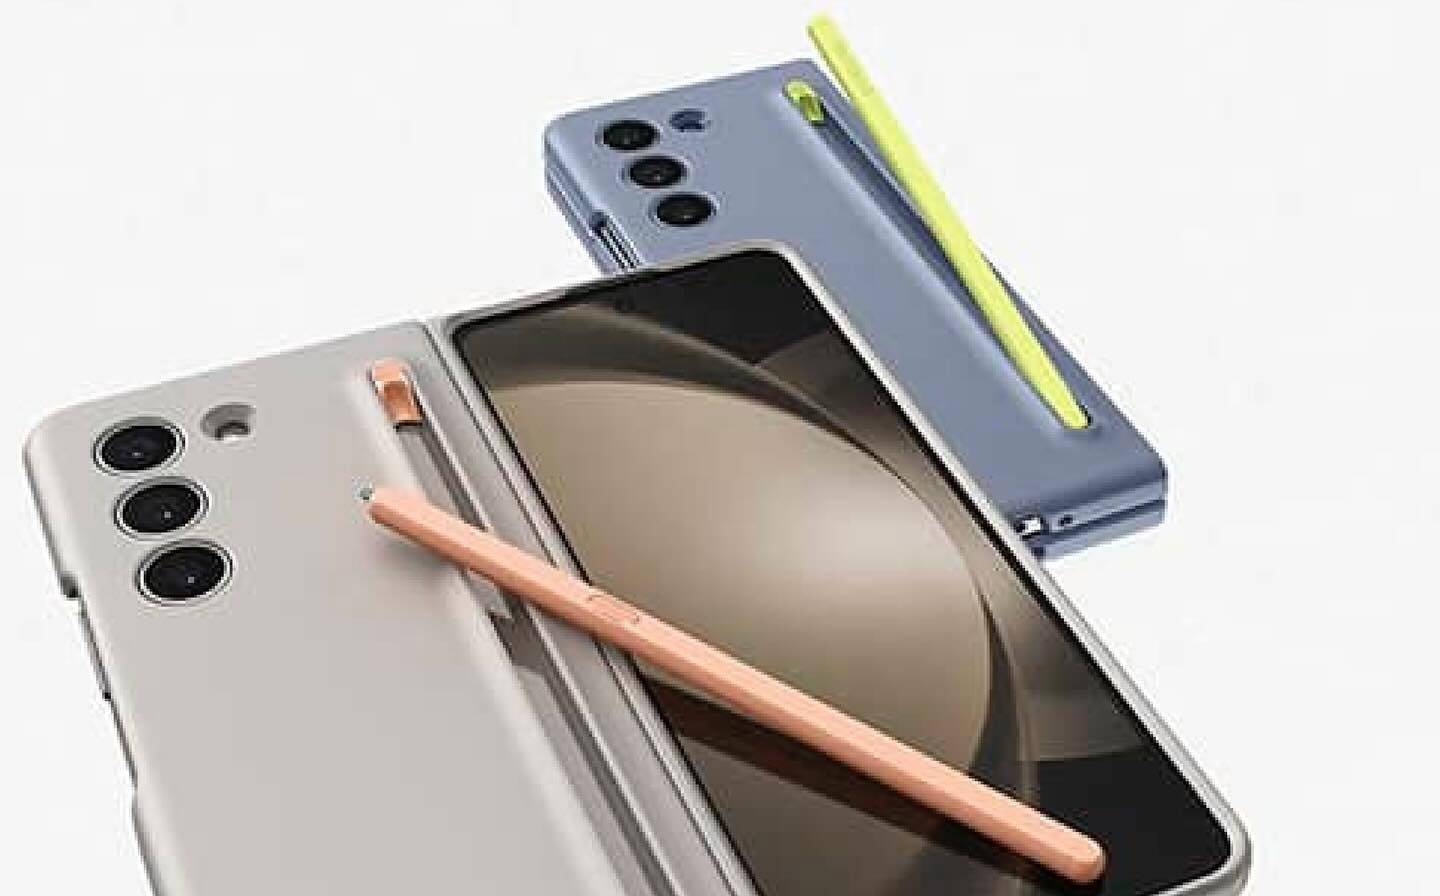 老年手机壳:消息称三星Galaxy Z Fold 5折叠屏手机将推配有S Pen笔槽的手机壳-第2张图片-太平洋在线下载